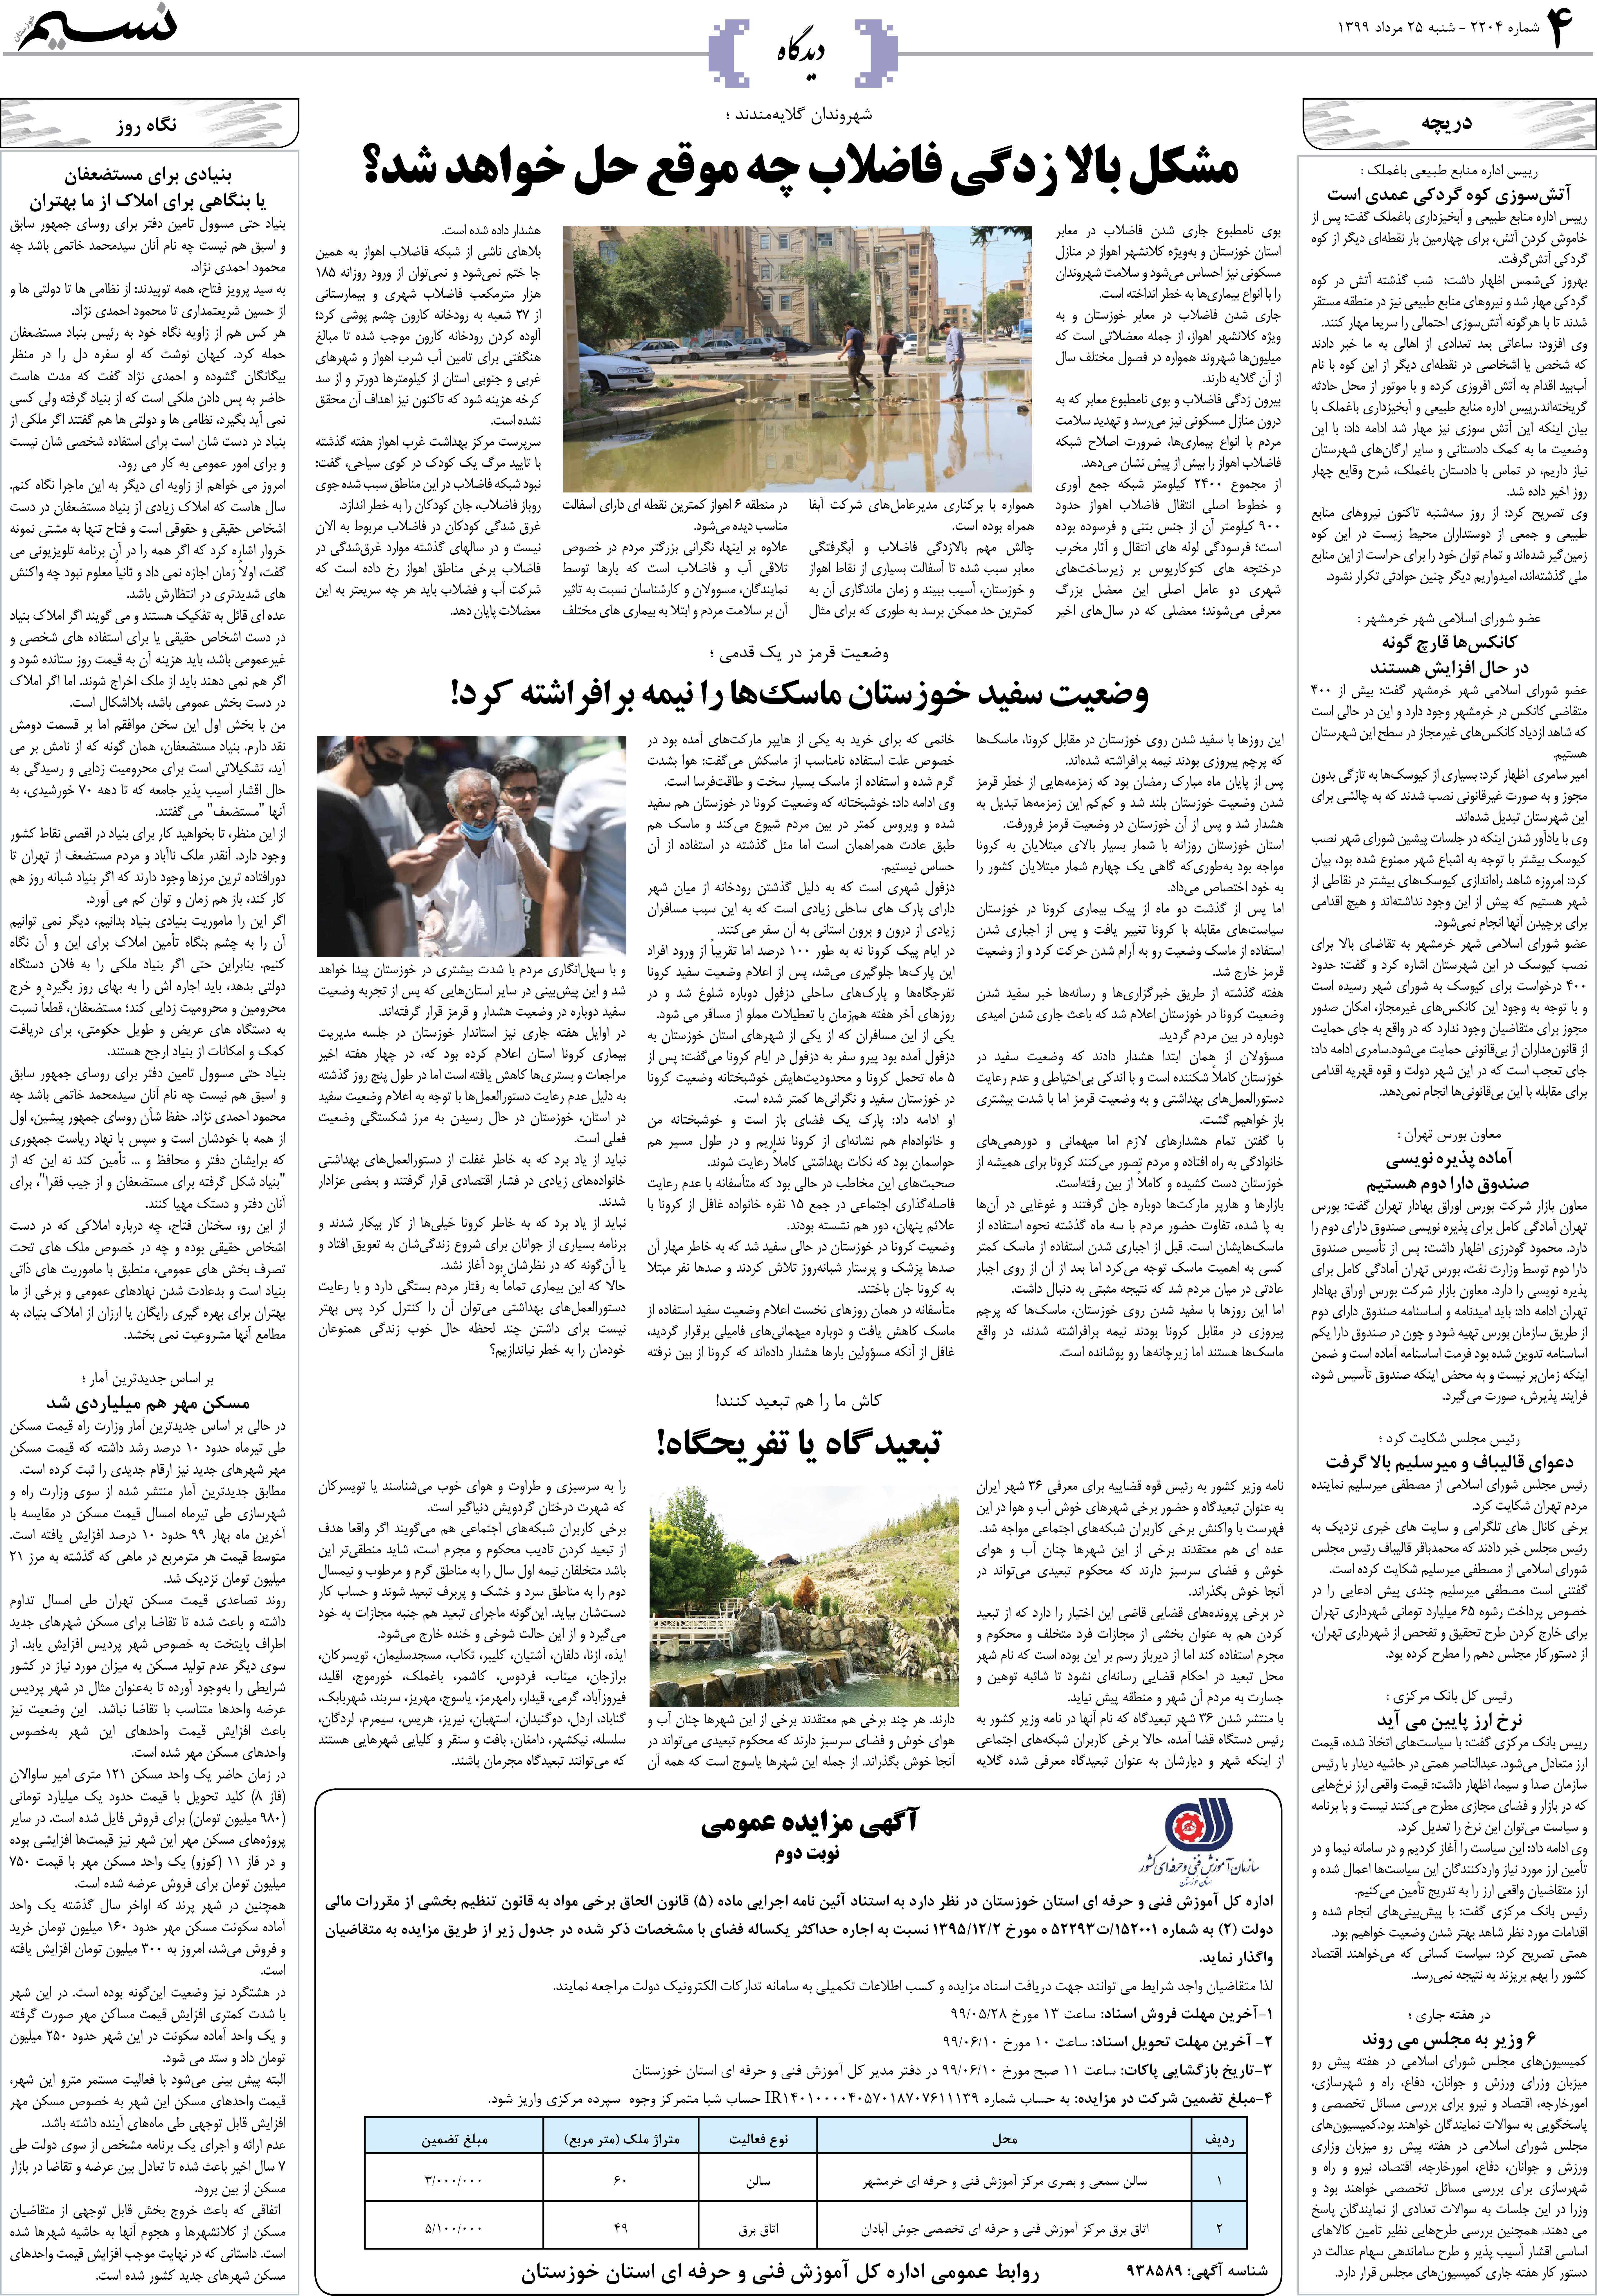 صفحه دیدگاه روزنامه نسیم شماره 2204